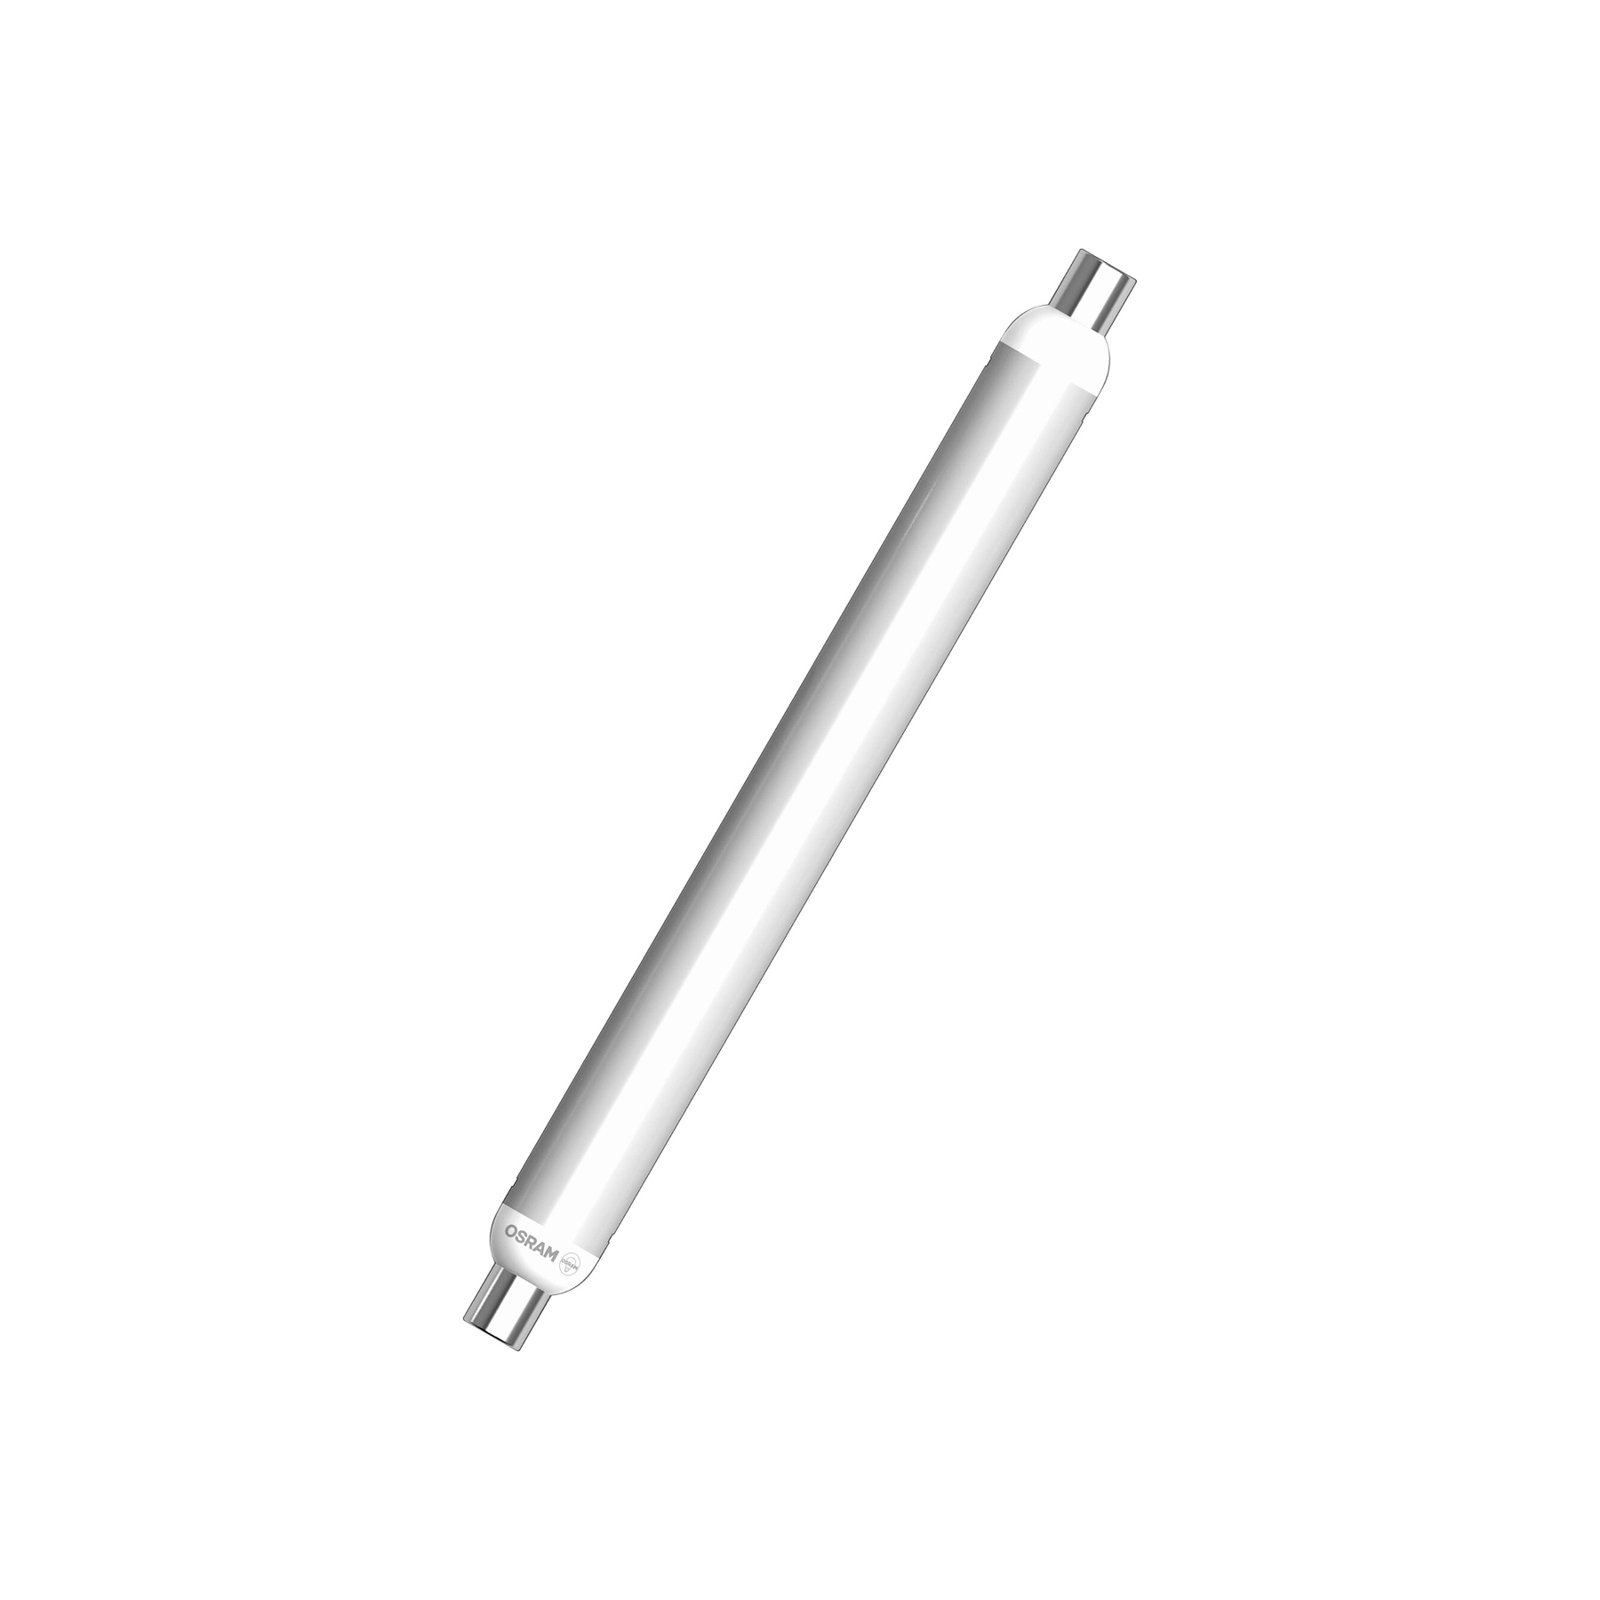 OSRAM LED tube bulb S15, S19, 28.4 cm, 7 W, 2,700 K